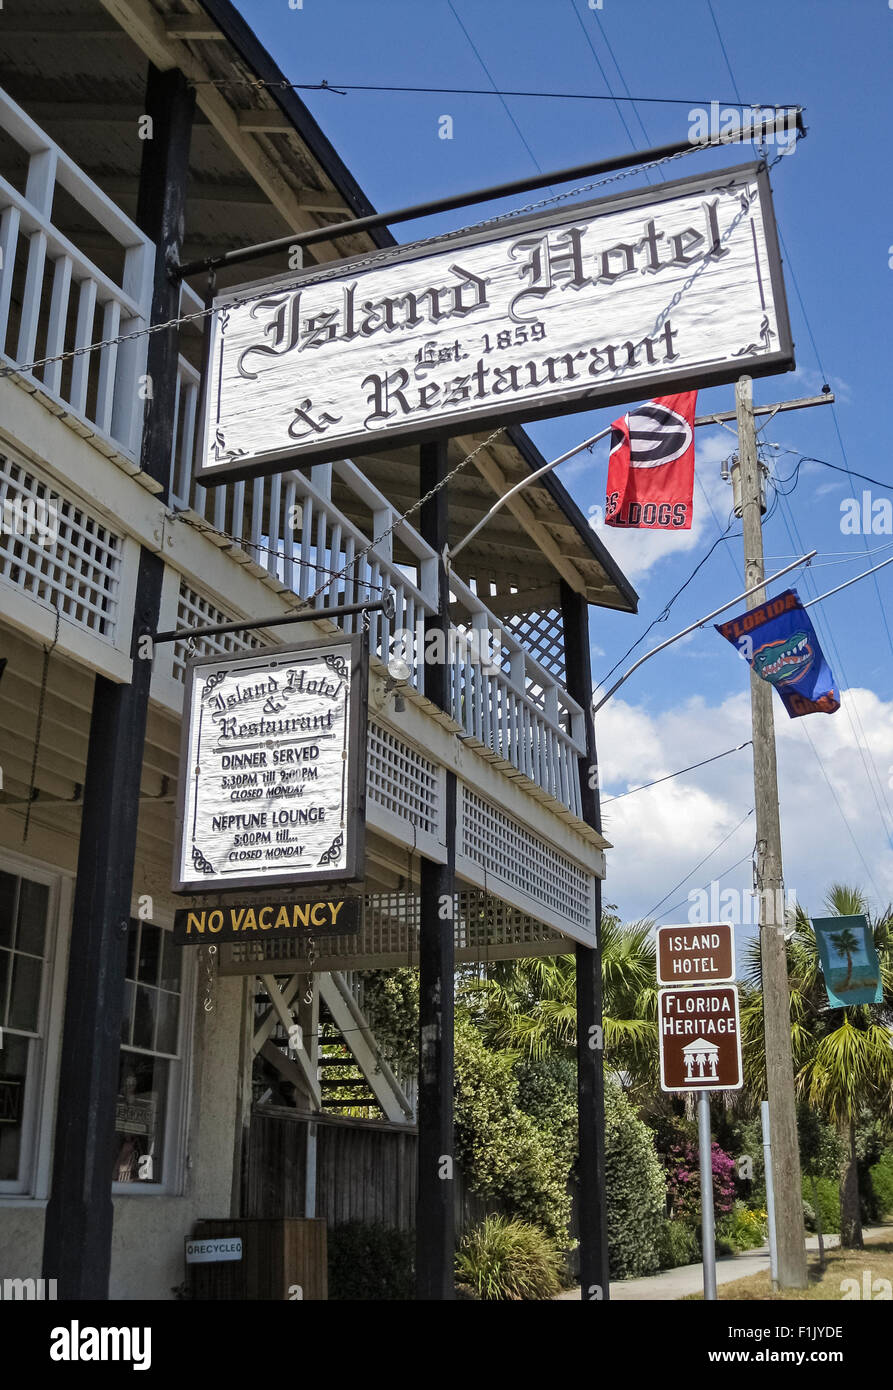 Le restaurant rustique de l'hôtel et l'île est un monument 1859 dans l'historique ville côtière de Cedar Key, Florida, USA, le long du golfe du Mexique. Banque D'Images